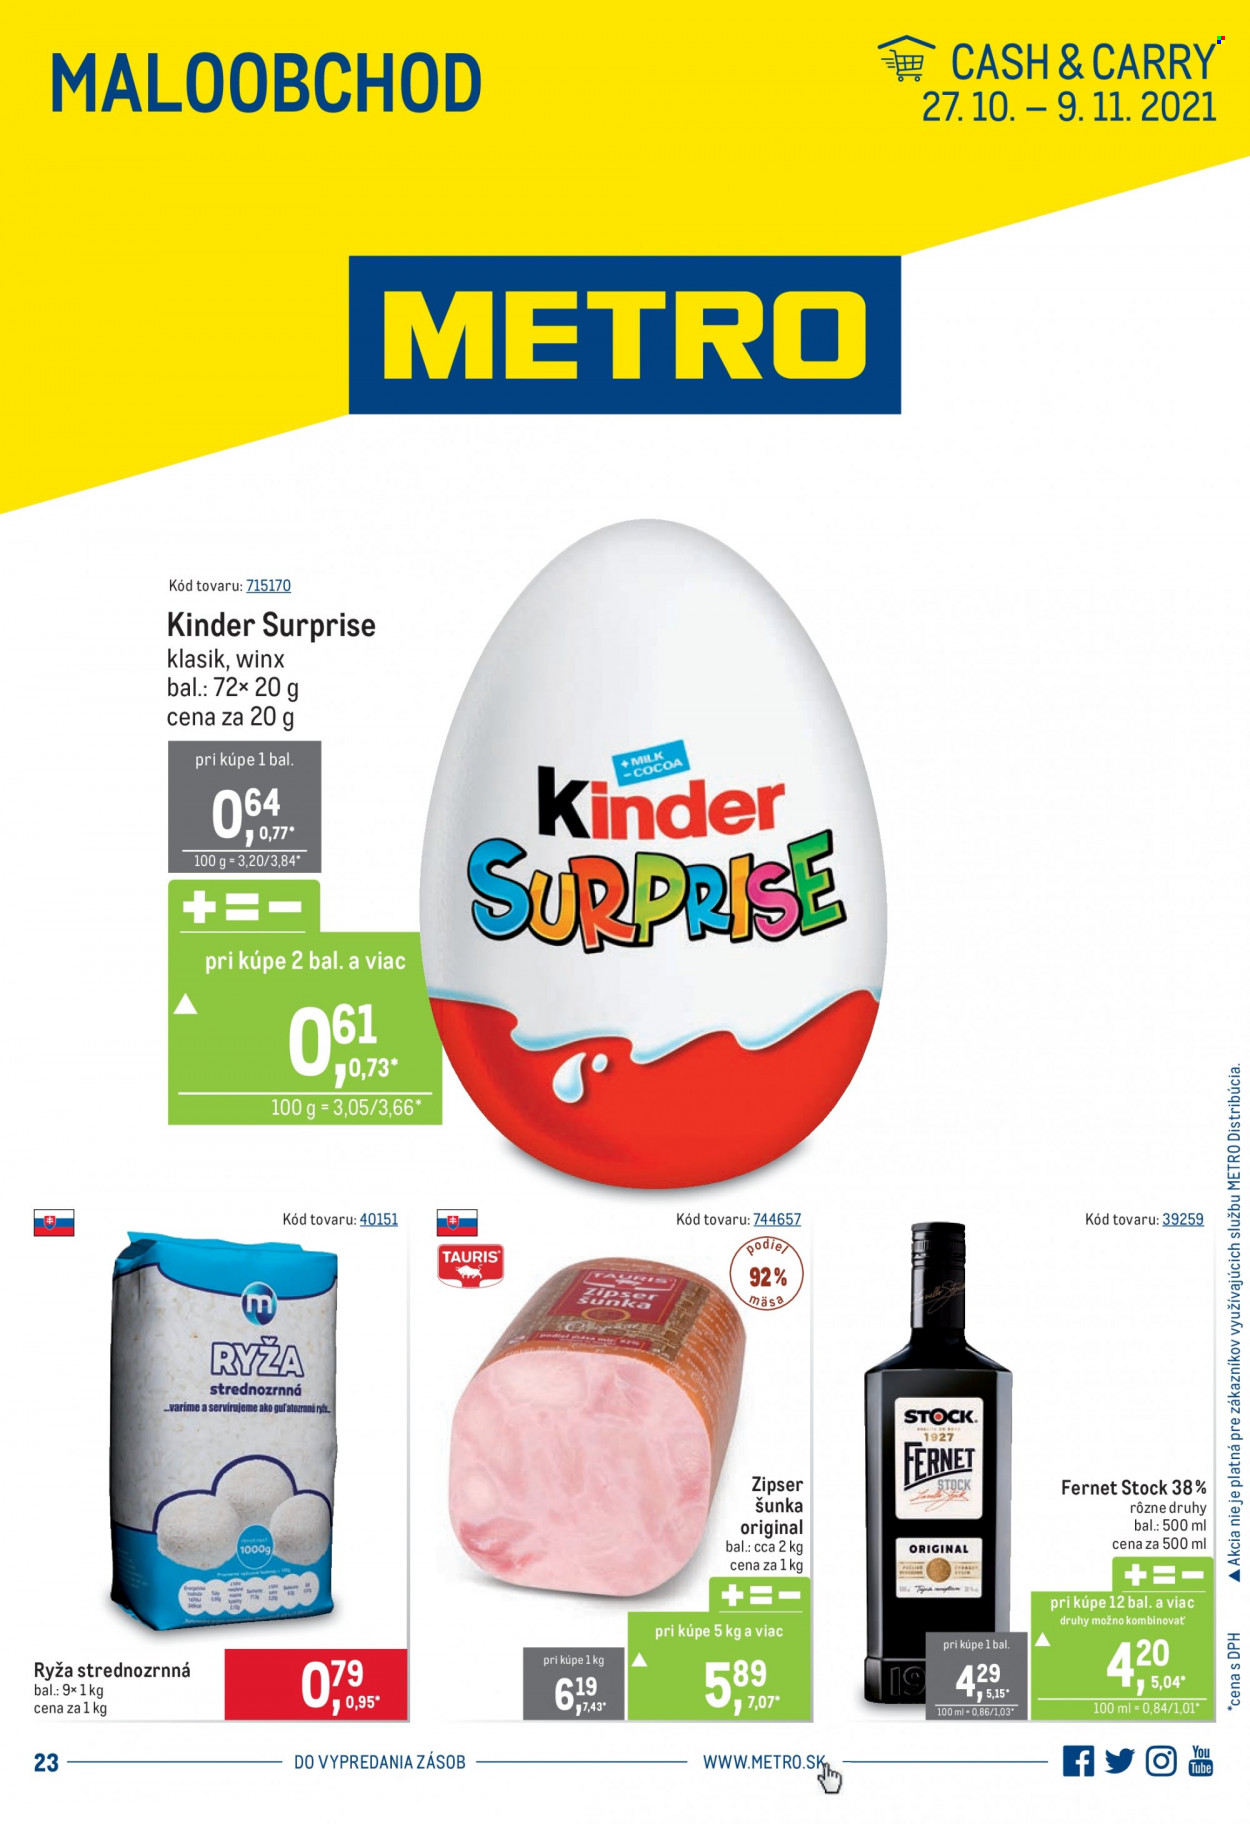 thumbnail - Leták Metro - 27.10.2021 - 9.11.2021 - Produkty v akcii - ryža, čokoládové vajíčko, Kinder, Kinder Surprise, šunka, Zipser, alkohol, bylinný likér, Fernet Stock. Strana 1.